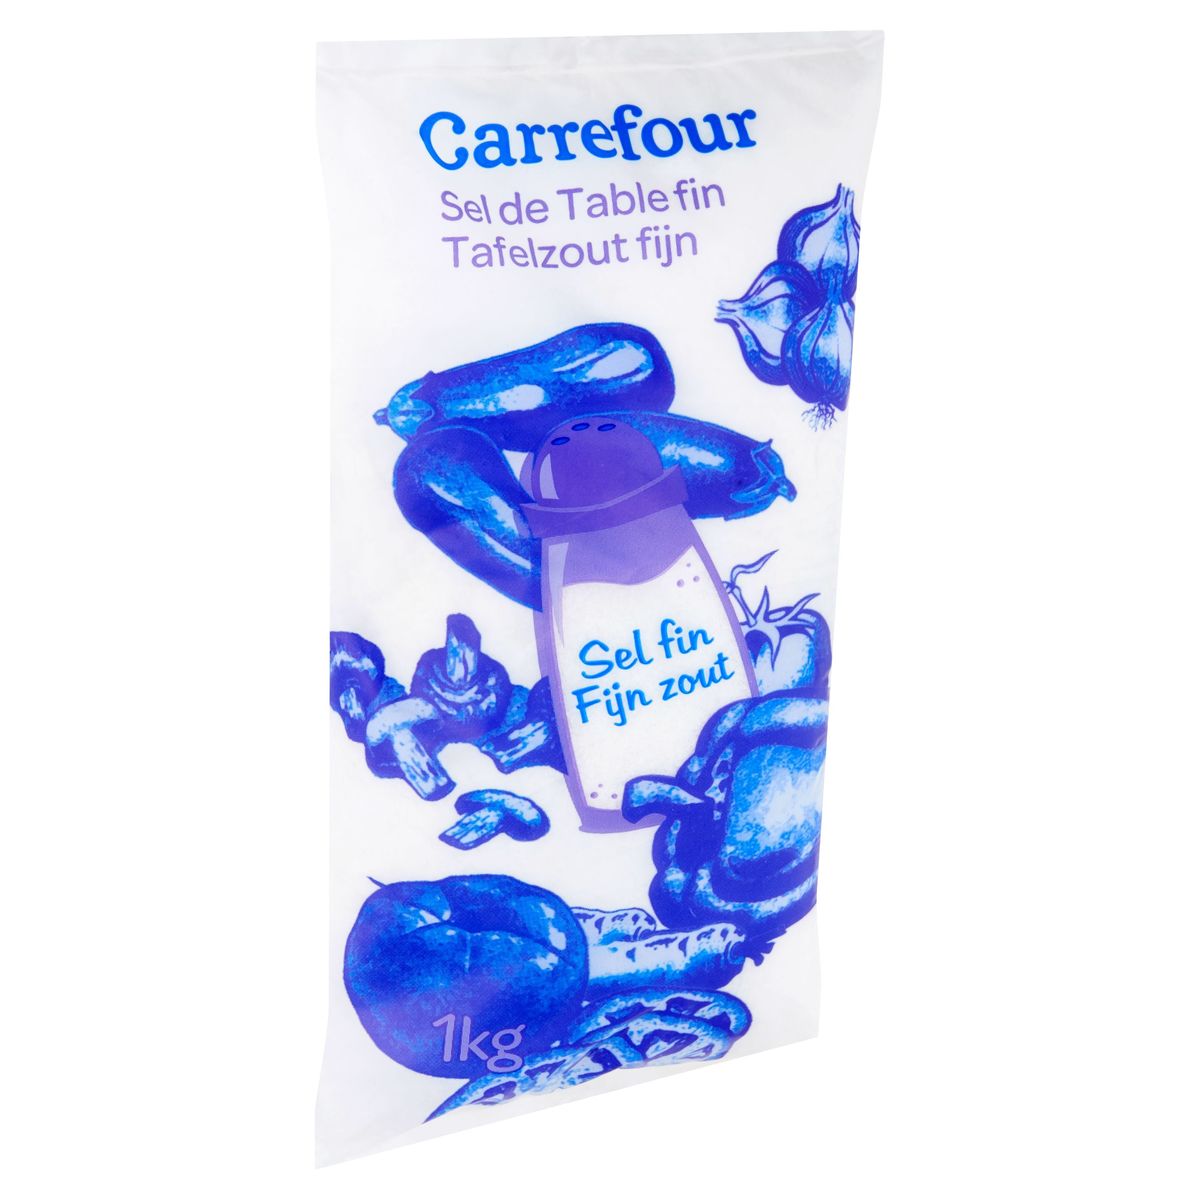 Carrefour Tafelzout Fijn 1 kg